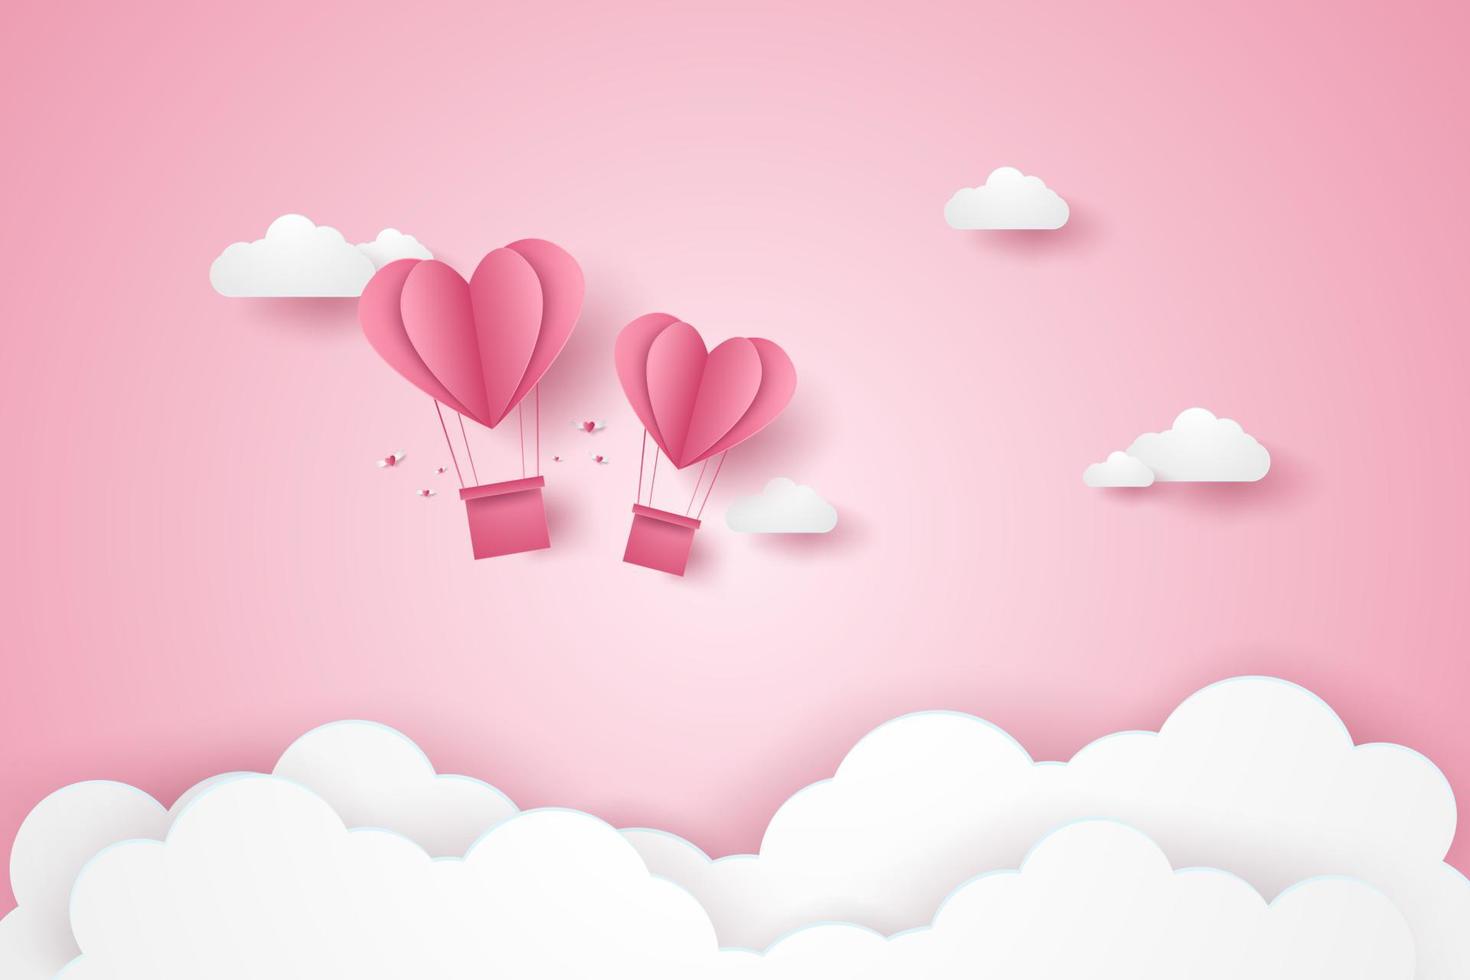 saint valentin, illustration de l'amour, ballons à air chaud coeur rose volant dans le ciel rose, style art papier vecteur